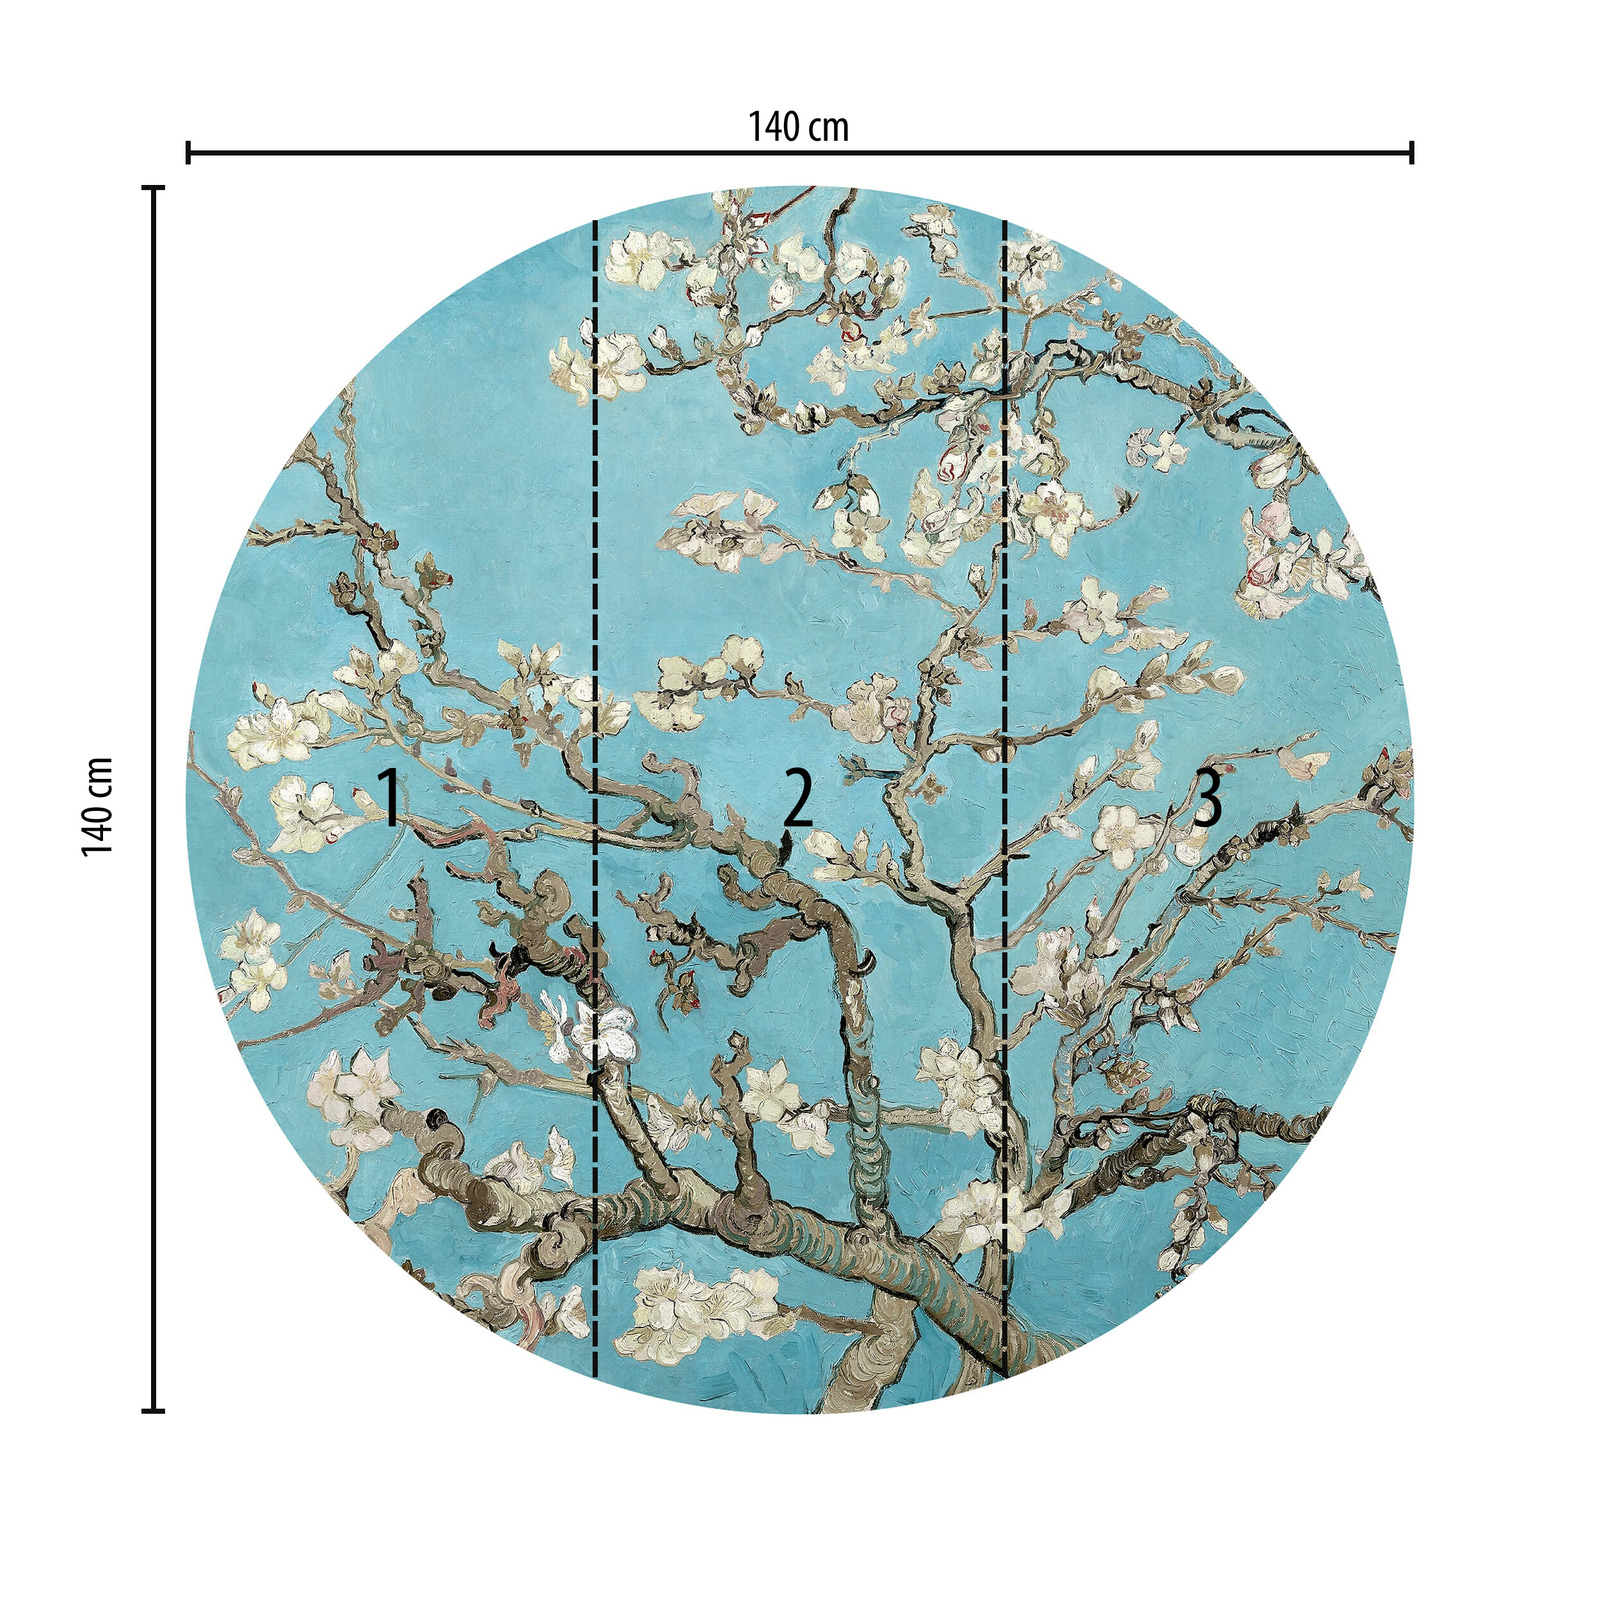             Runde Fototapete Mandelblüten in Blau und Weiß
        